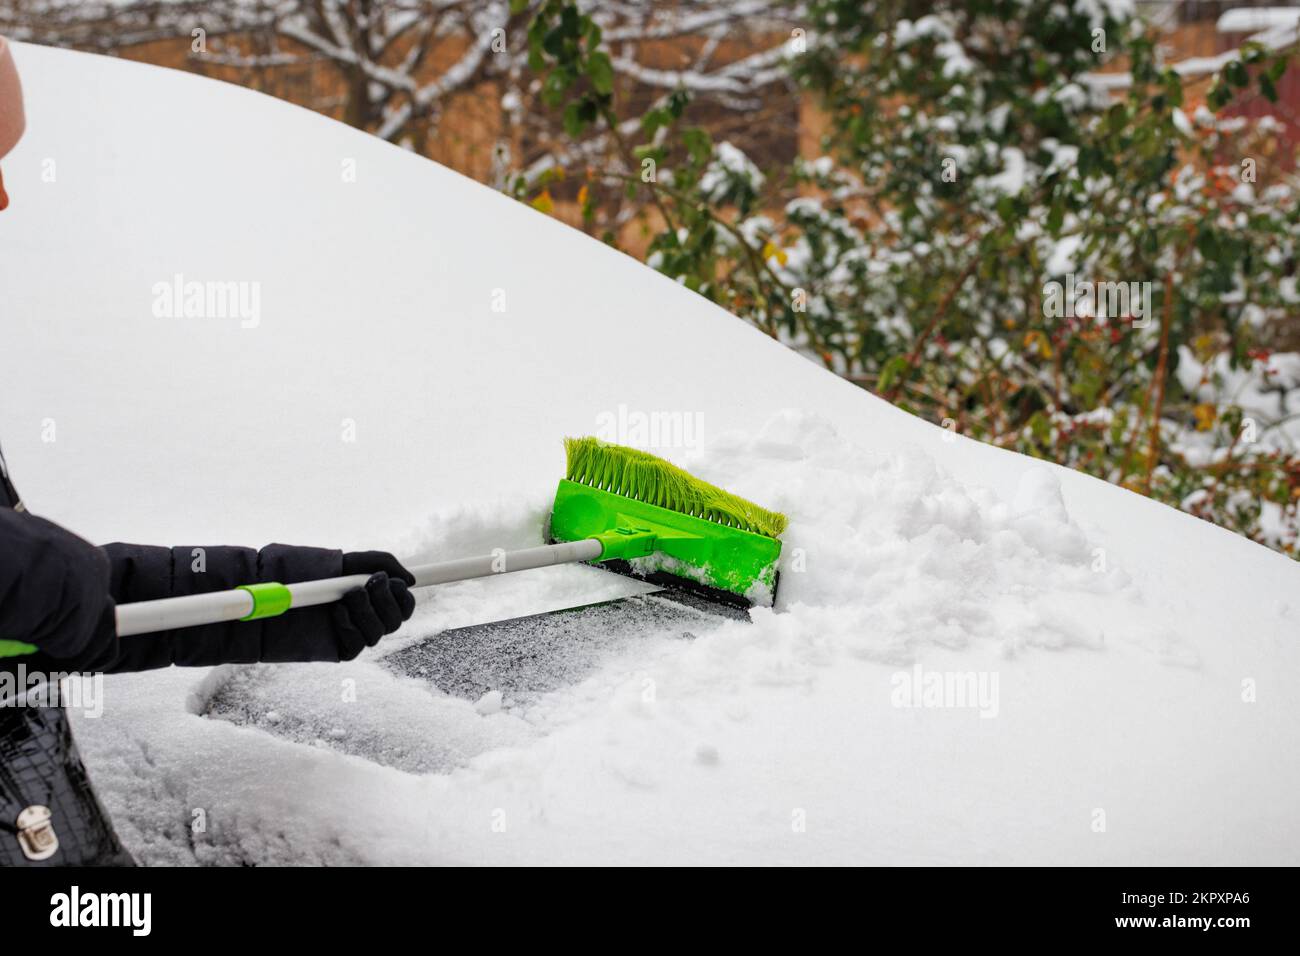 Frau reinigt ihr Auto von Eis und Schnee Stockfotografie - Alamy